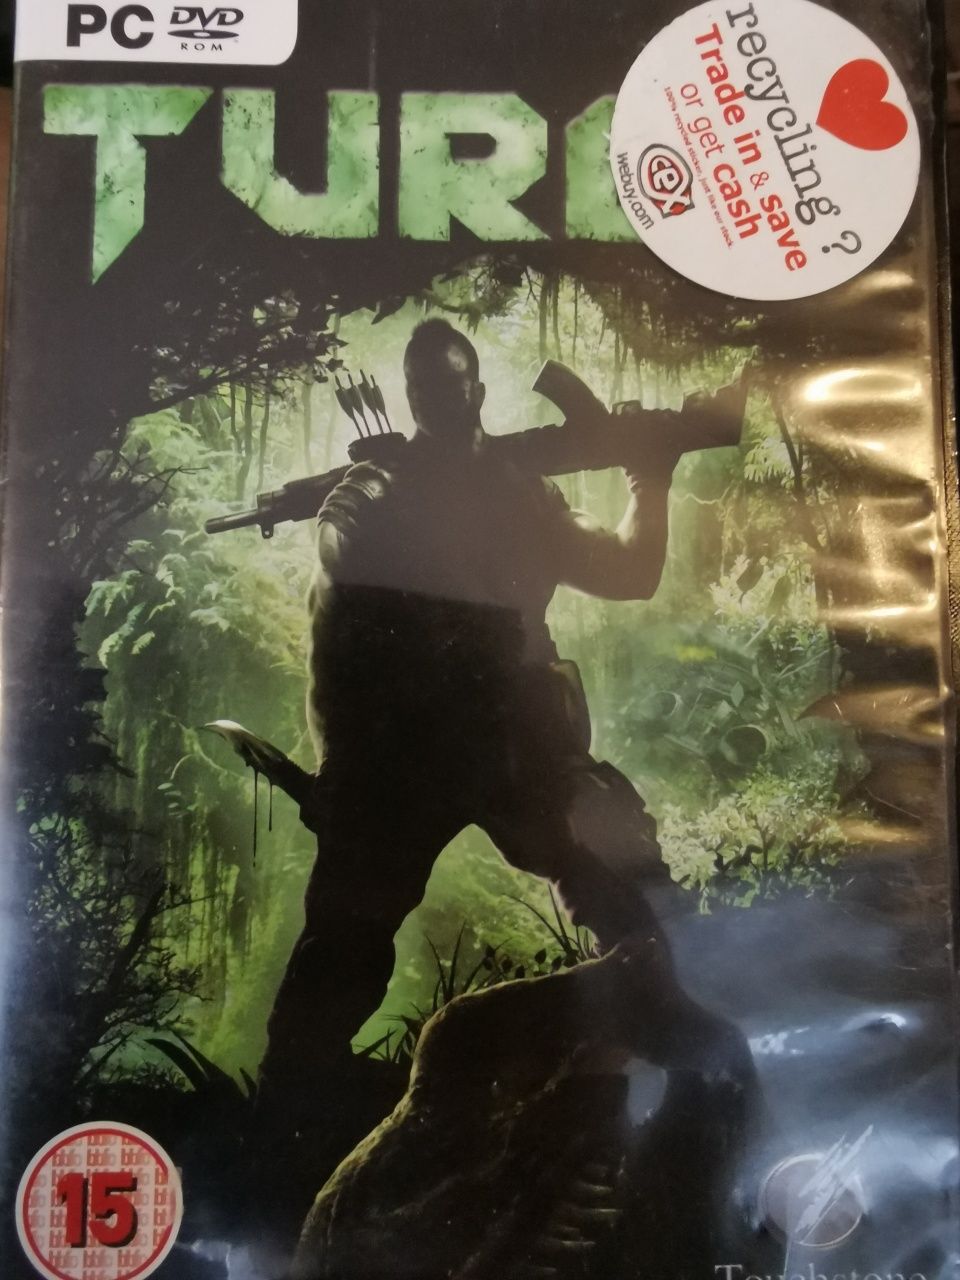 Gra PC dvd "Turok"